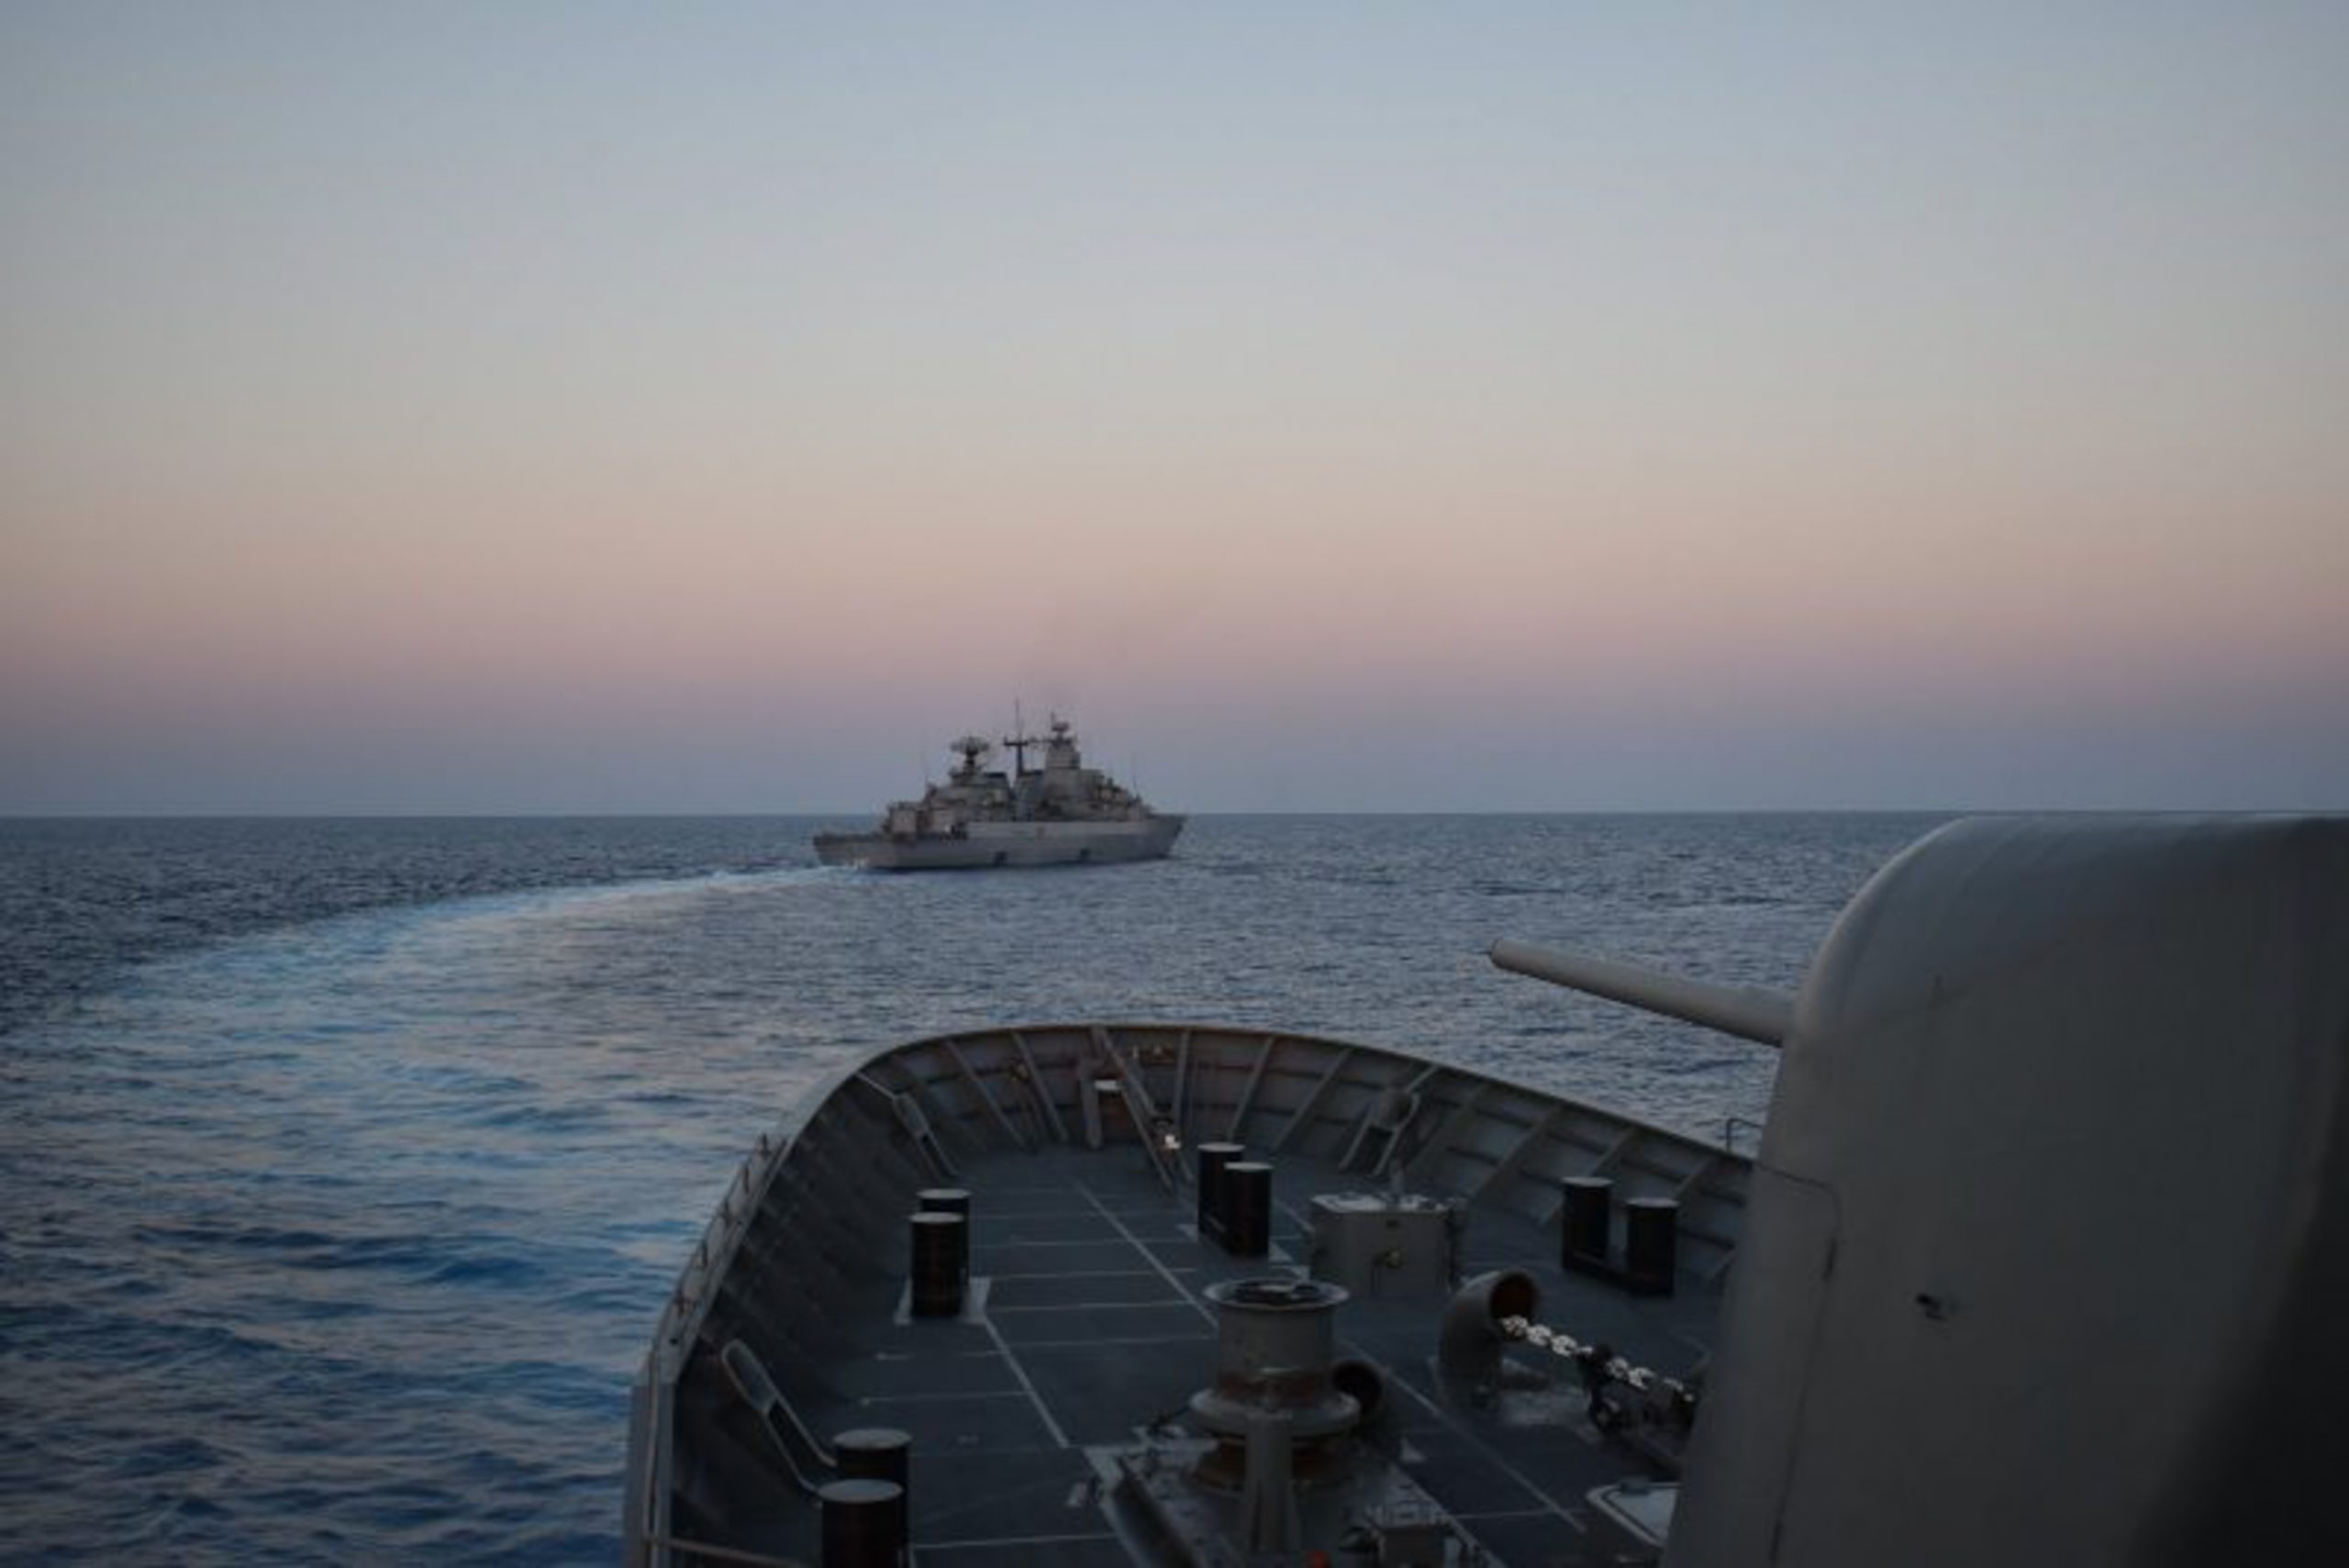 Ρωσικά πολεμικά πλοία στη Μεσόγειο! Κατευθύνονται στη Μαύρη Θάλασσα